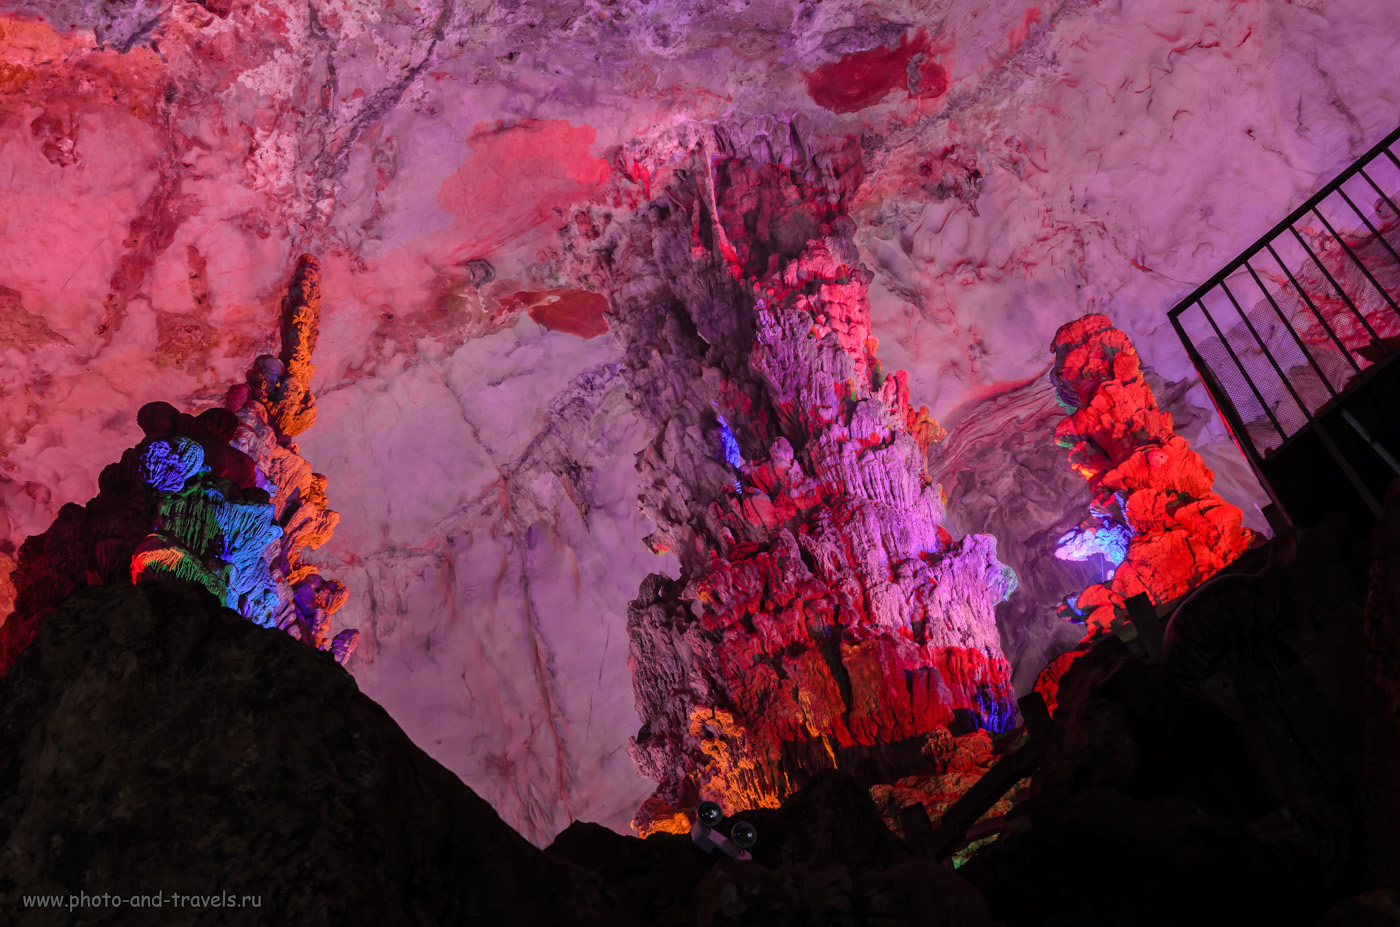 Фотография 6. Сталагмиты в пещере Crown Cave. Экскурсии в Гуйлине. Отчет о путешествии по Китаю самостоятельно. Параметры съемки: 1.6 сек., 8.0, 400, 31.